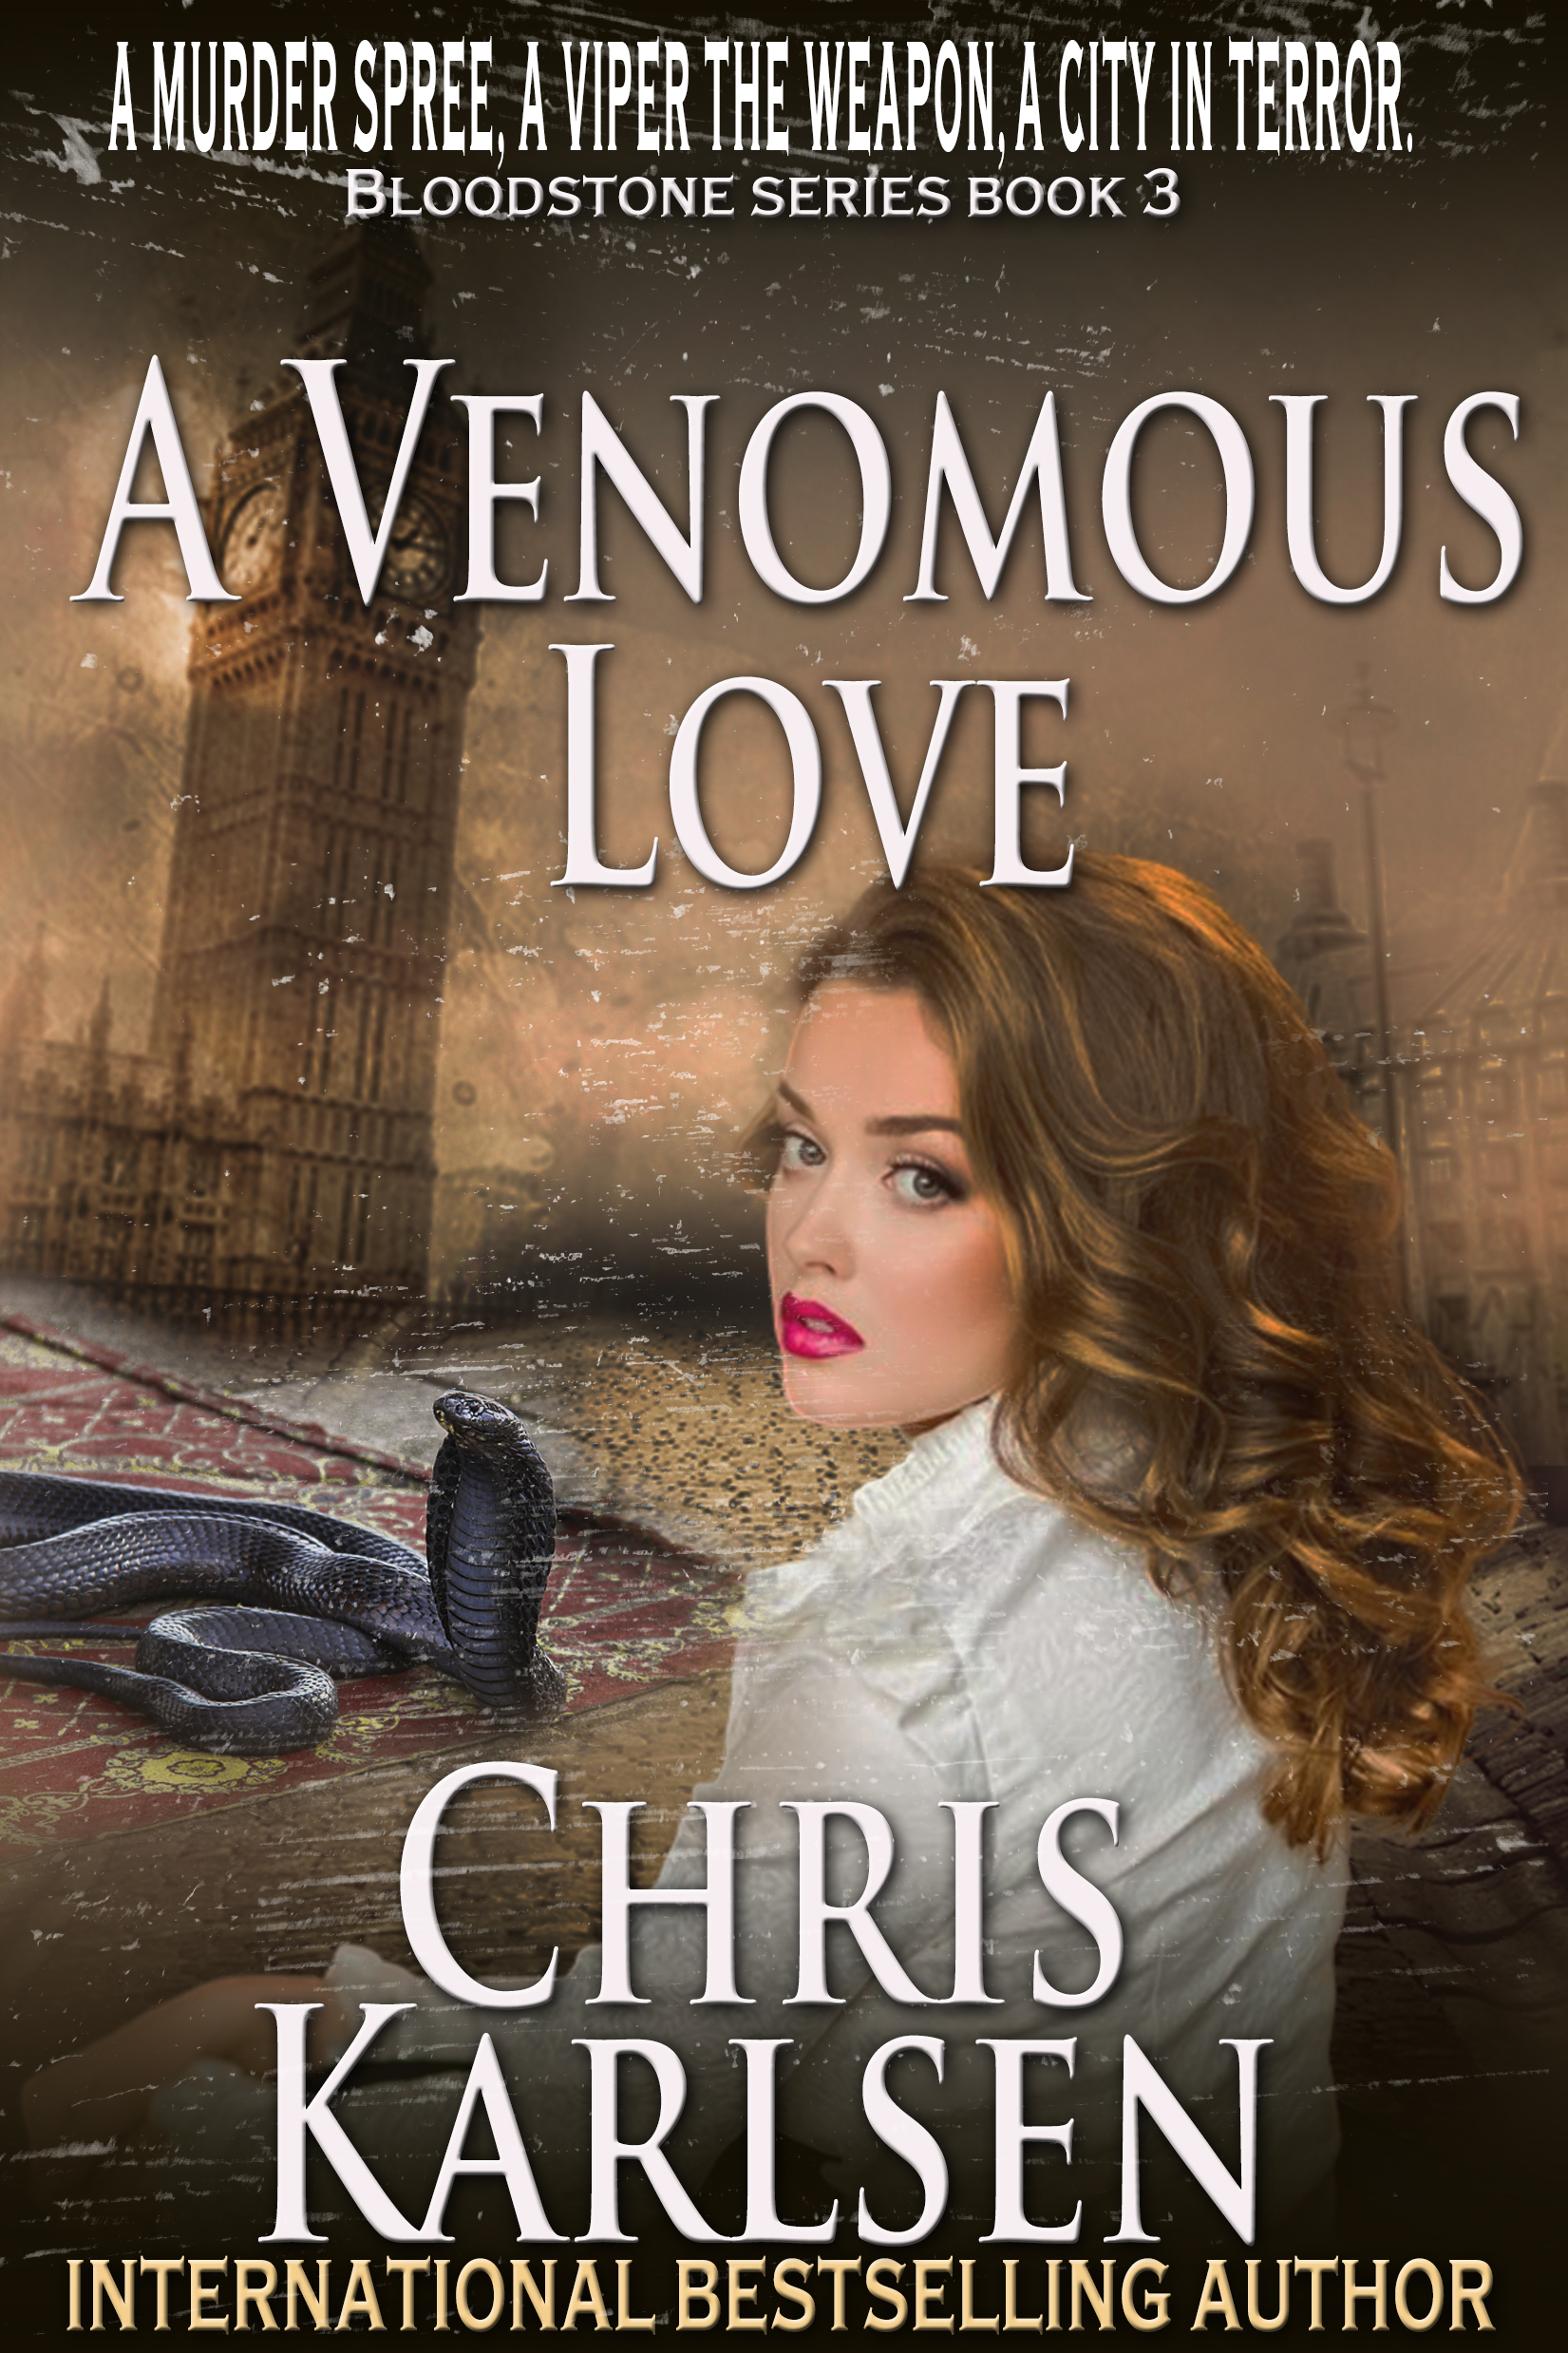 A Venomous Love by Chris Karlsen